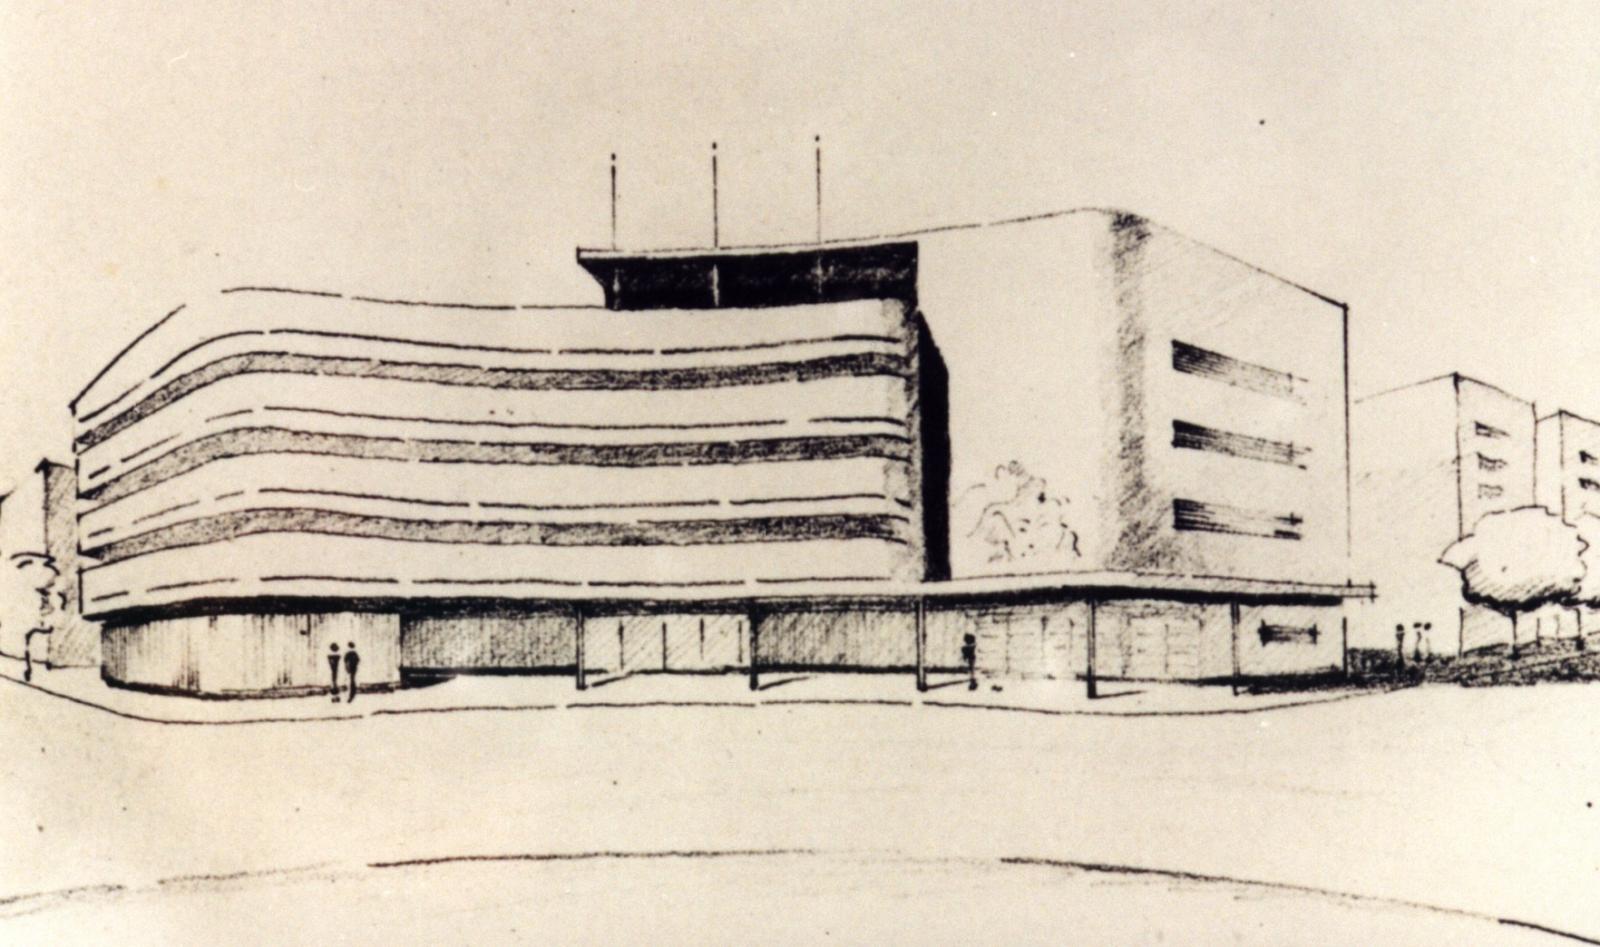 Gdynia-Tel Awiww – utopia zrealizowana? Grafika archiwalna, pożółkła, czarno-biała. Przedstawia odręczny rysunek fasady budynku modernistycznego